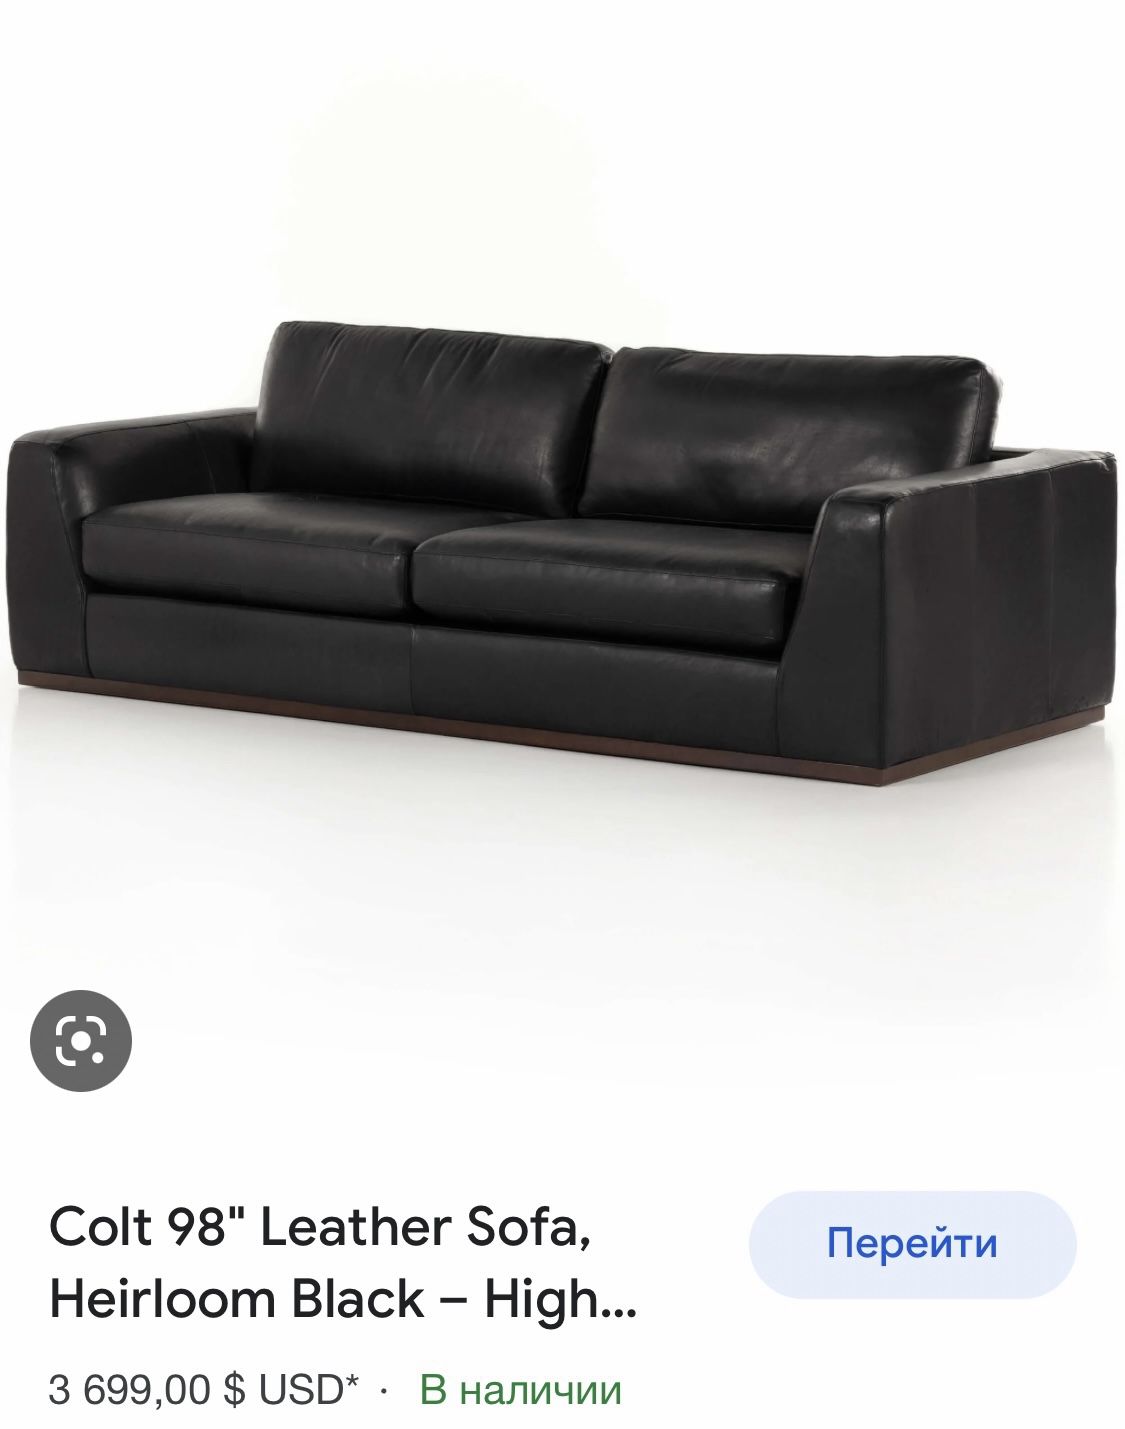 New Sofa Colt 98” Leather Sofa 